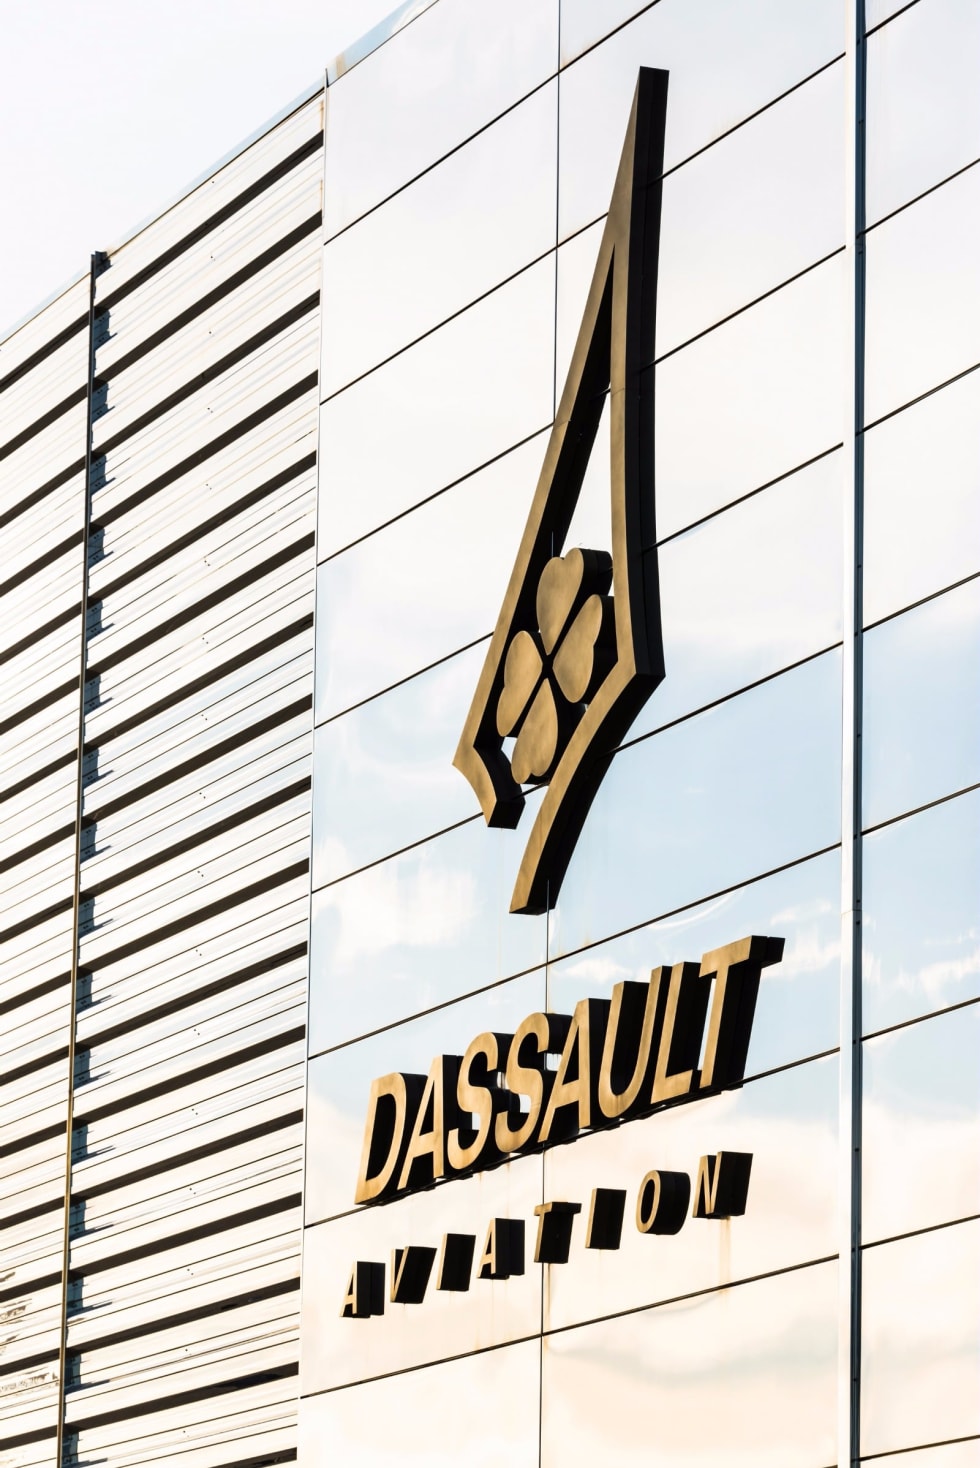 Établissement Dassault Aviation de Bordeaux-Mérignac.